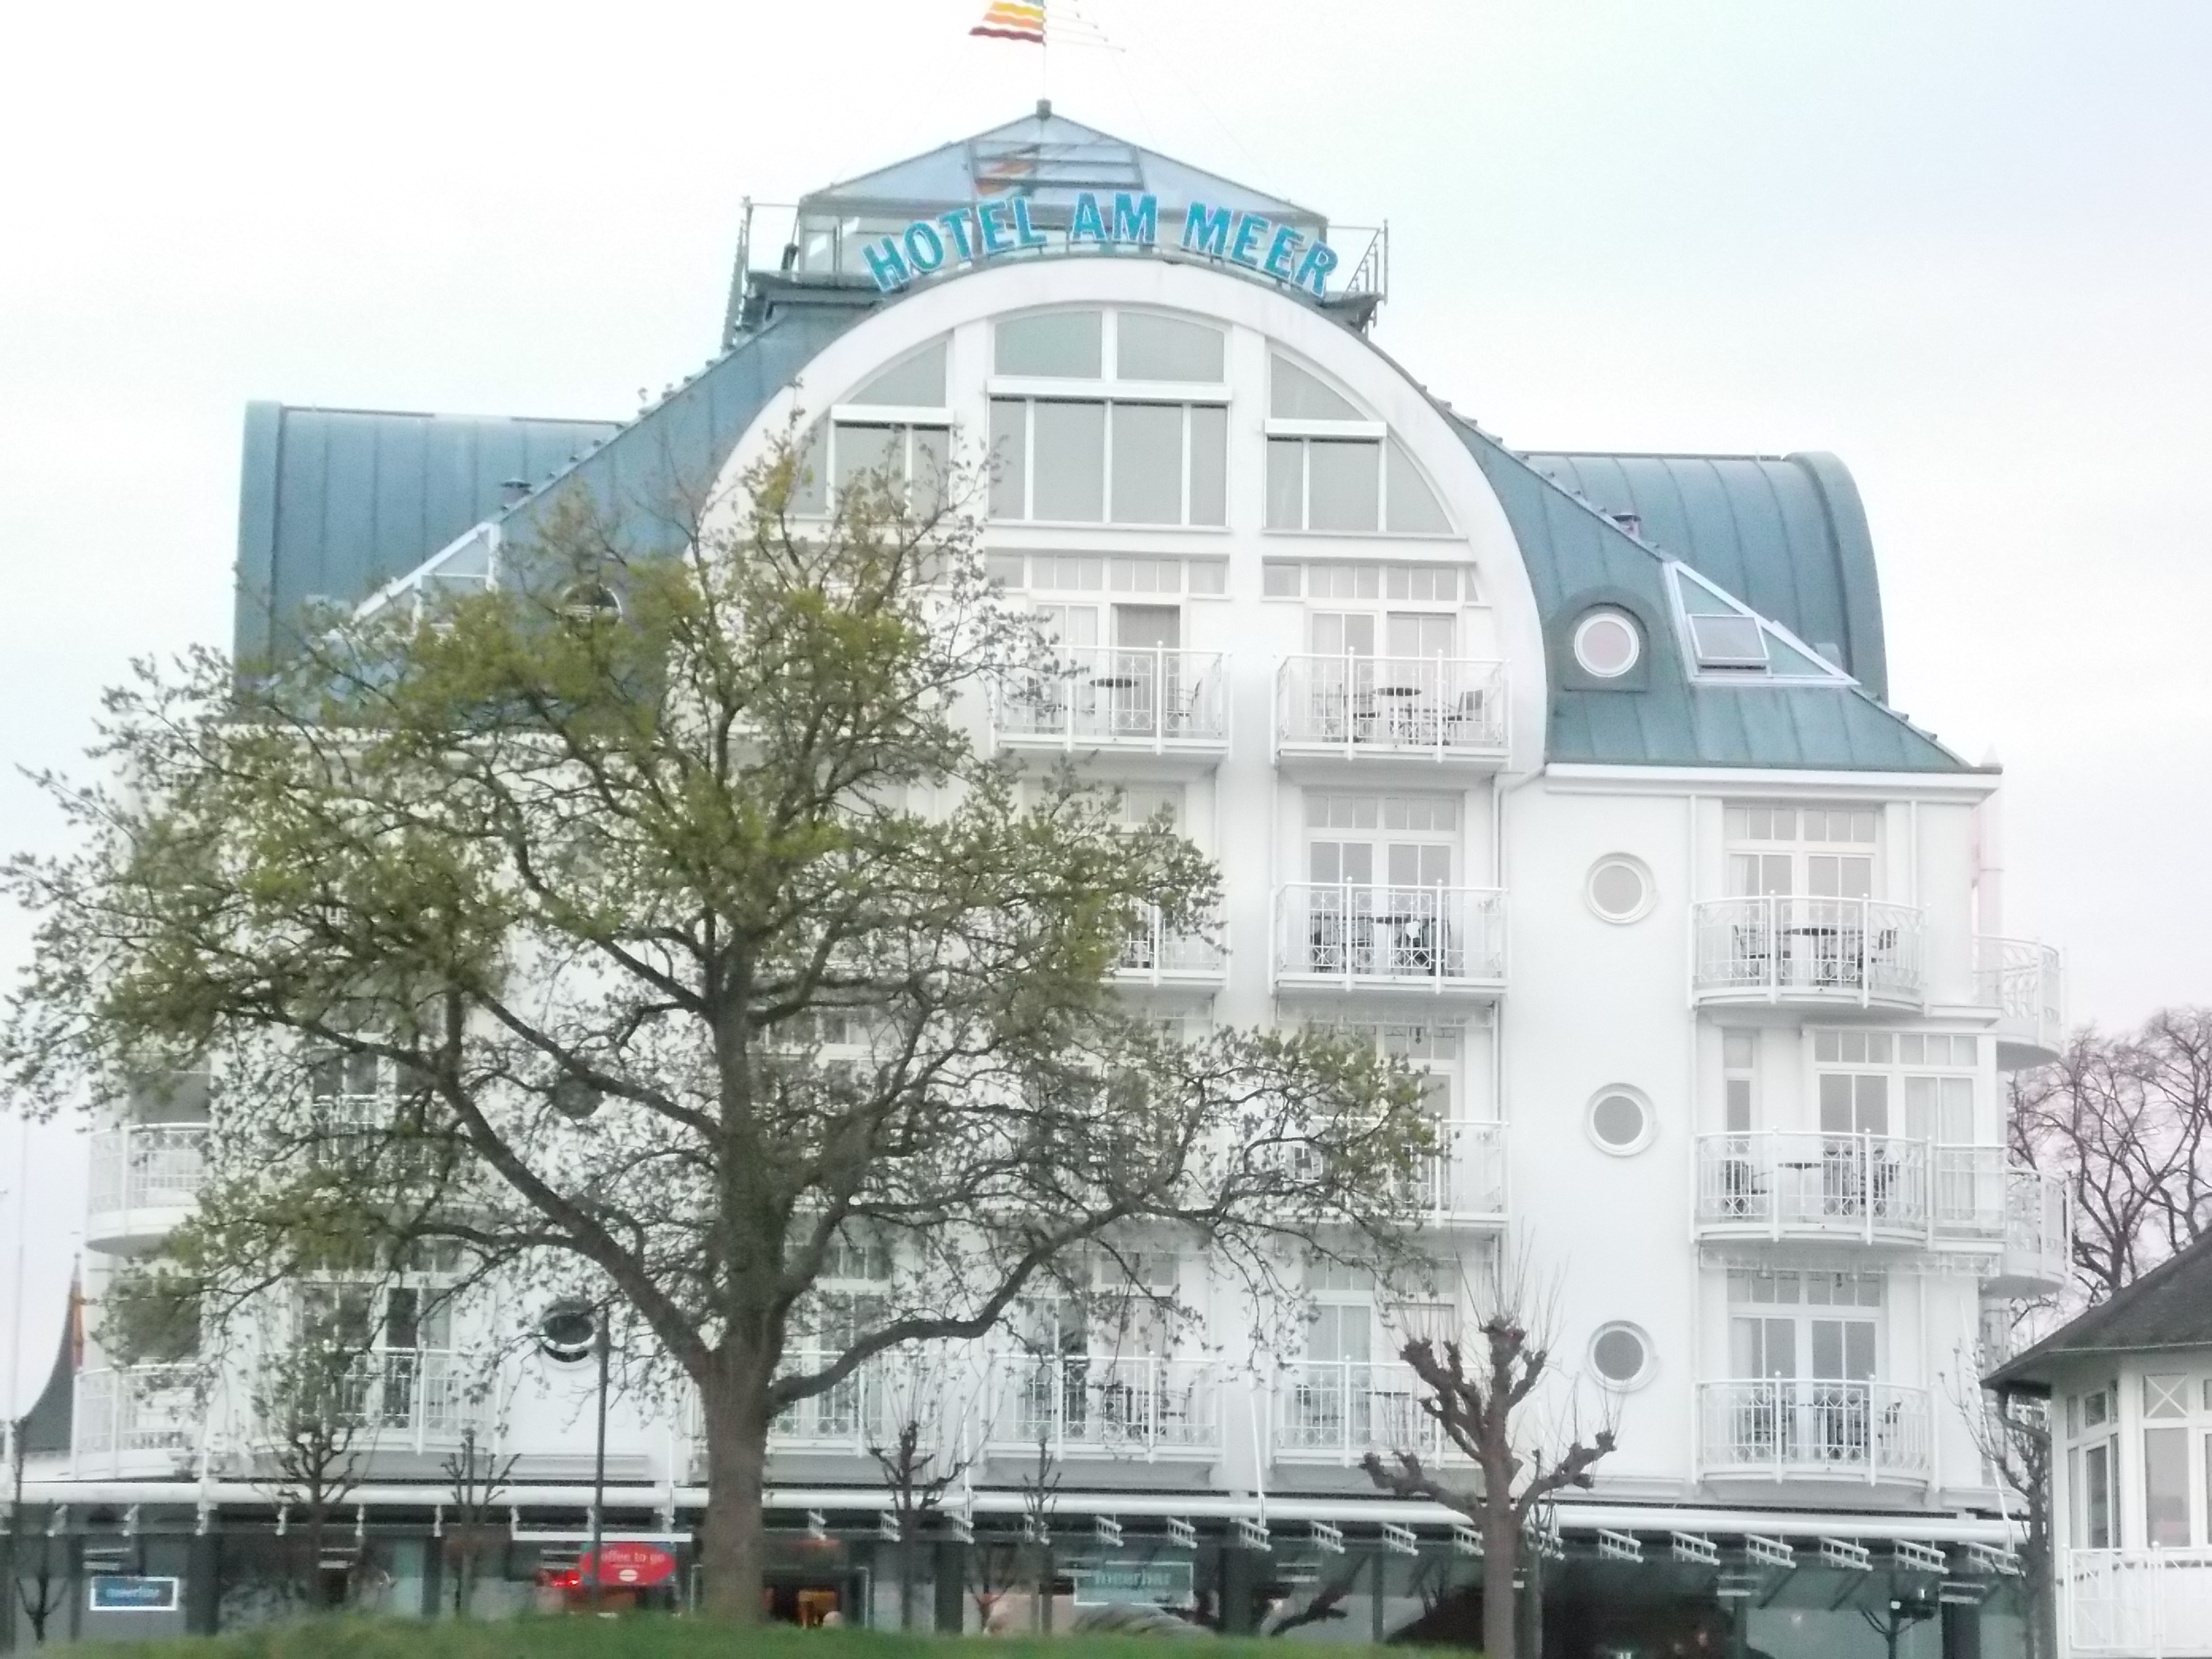 Bild 4 Hotel Am Meer in Binz, Ostseebad